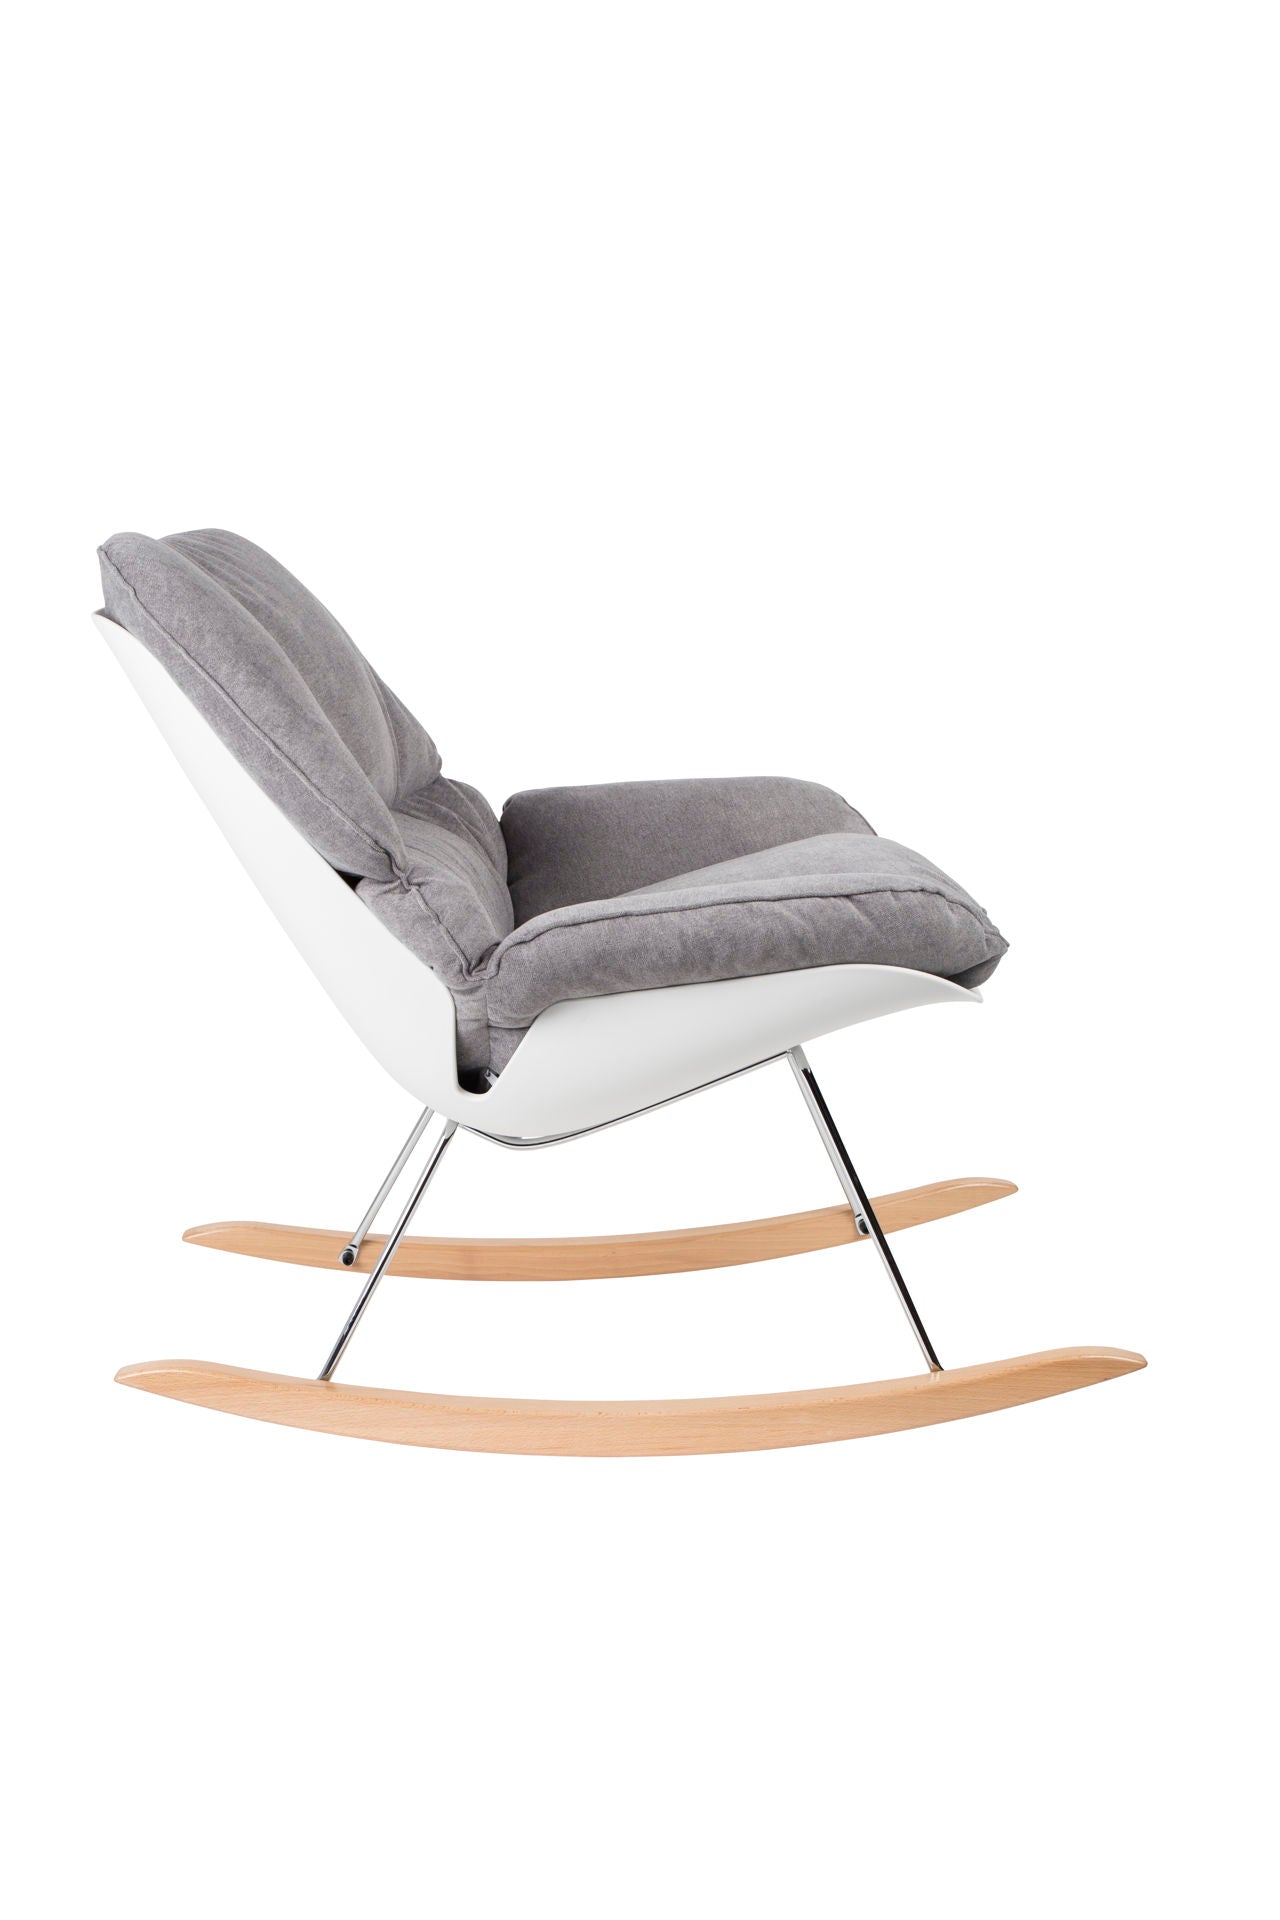 Nancy's East Renton Highlands Lounge Chair - Moderne - Gris - Polypropylène, Mousse, Bois - 98 cm x 76 cm x 84 cm